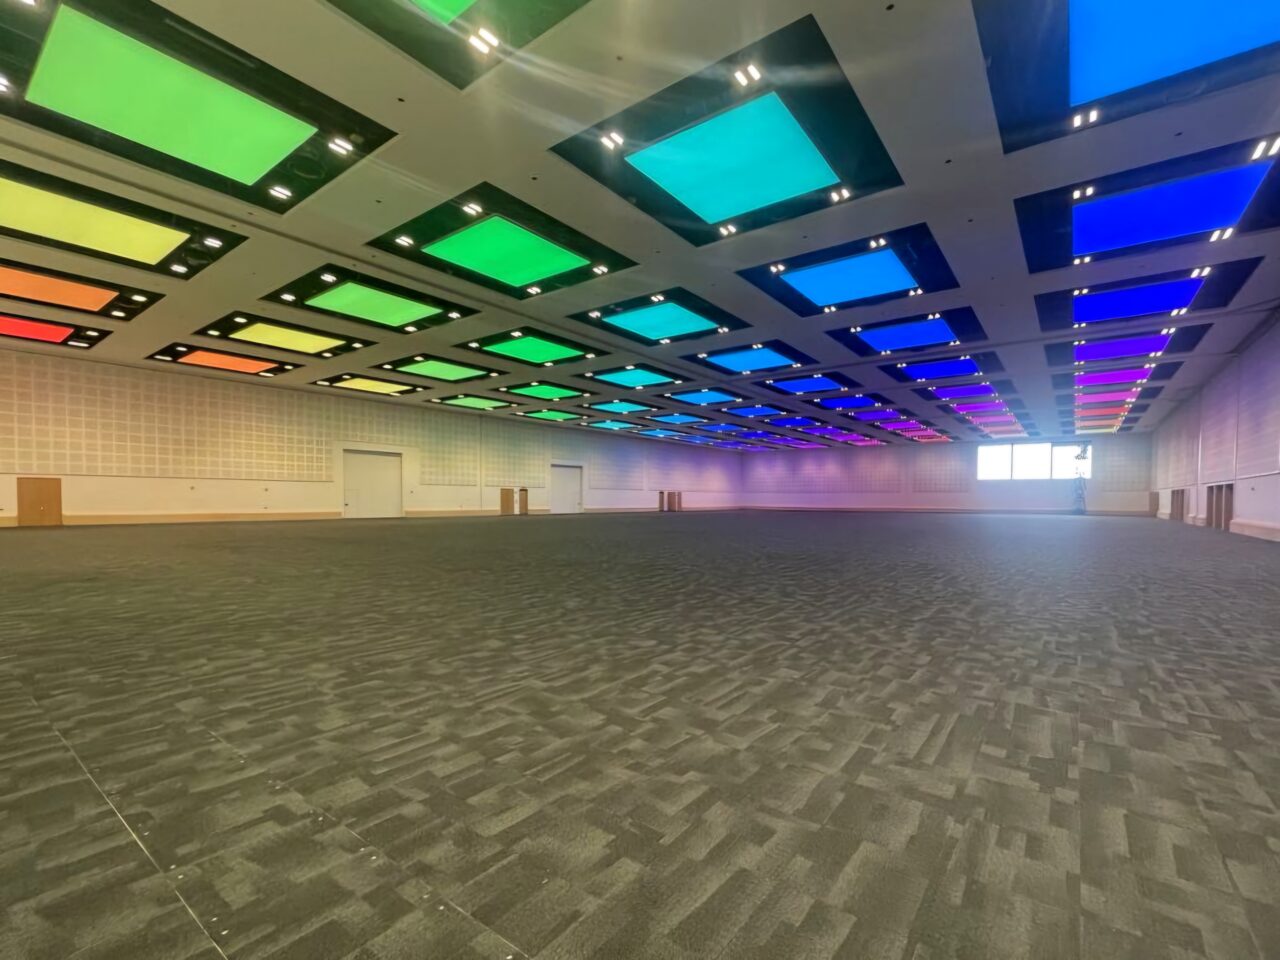 Stor konferansesal med opplyst tak i regnbuens farger. Foto